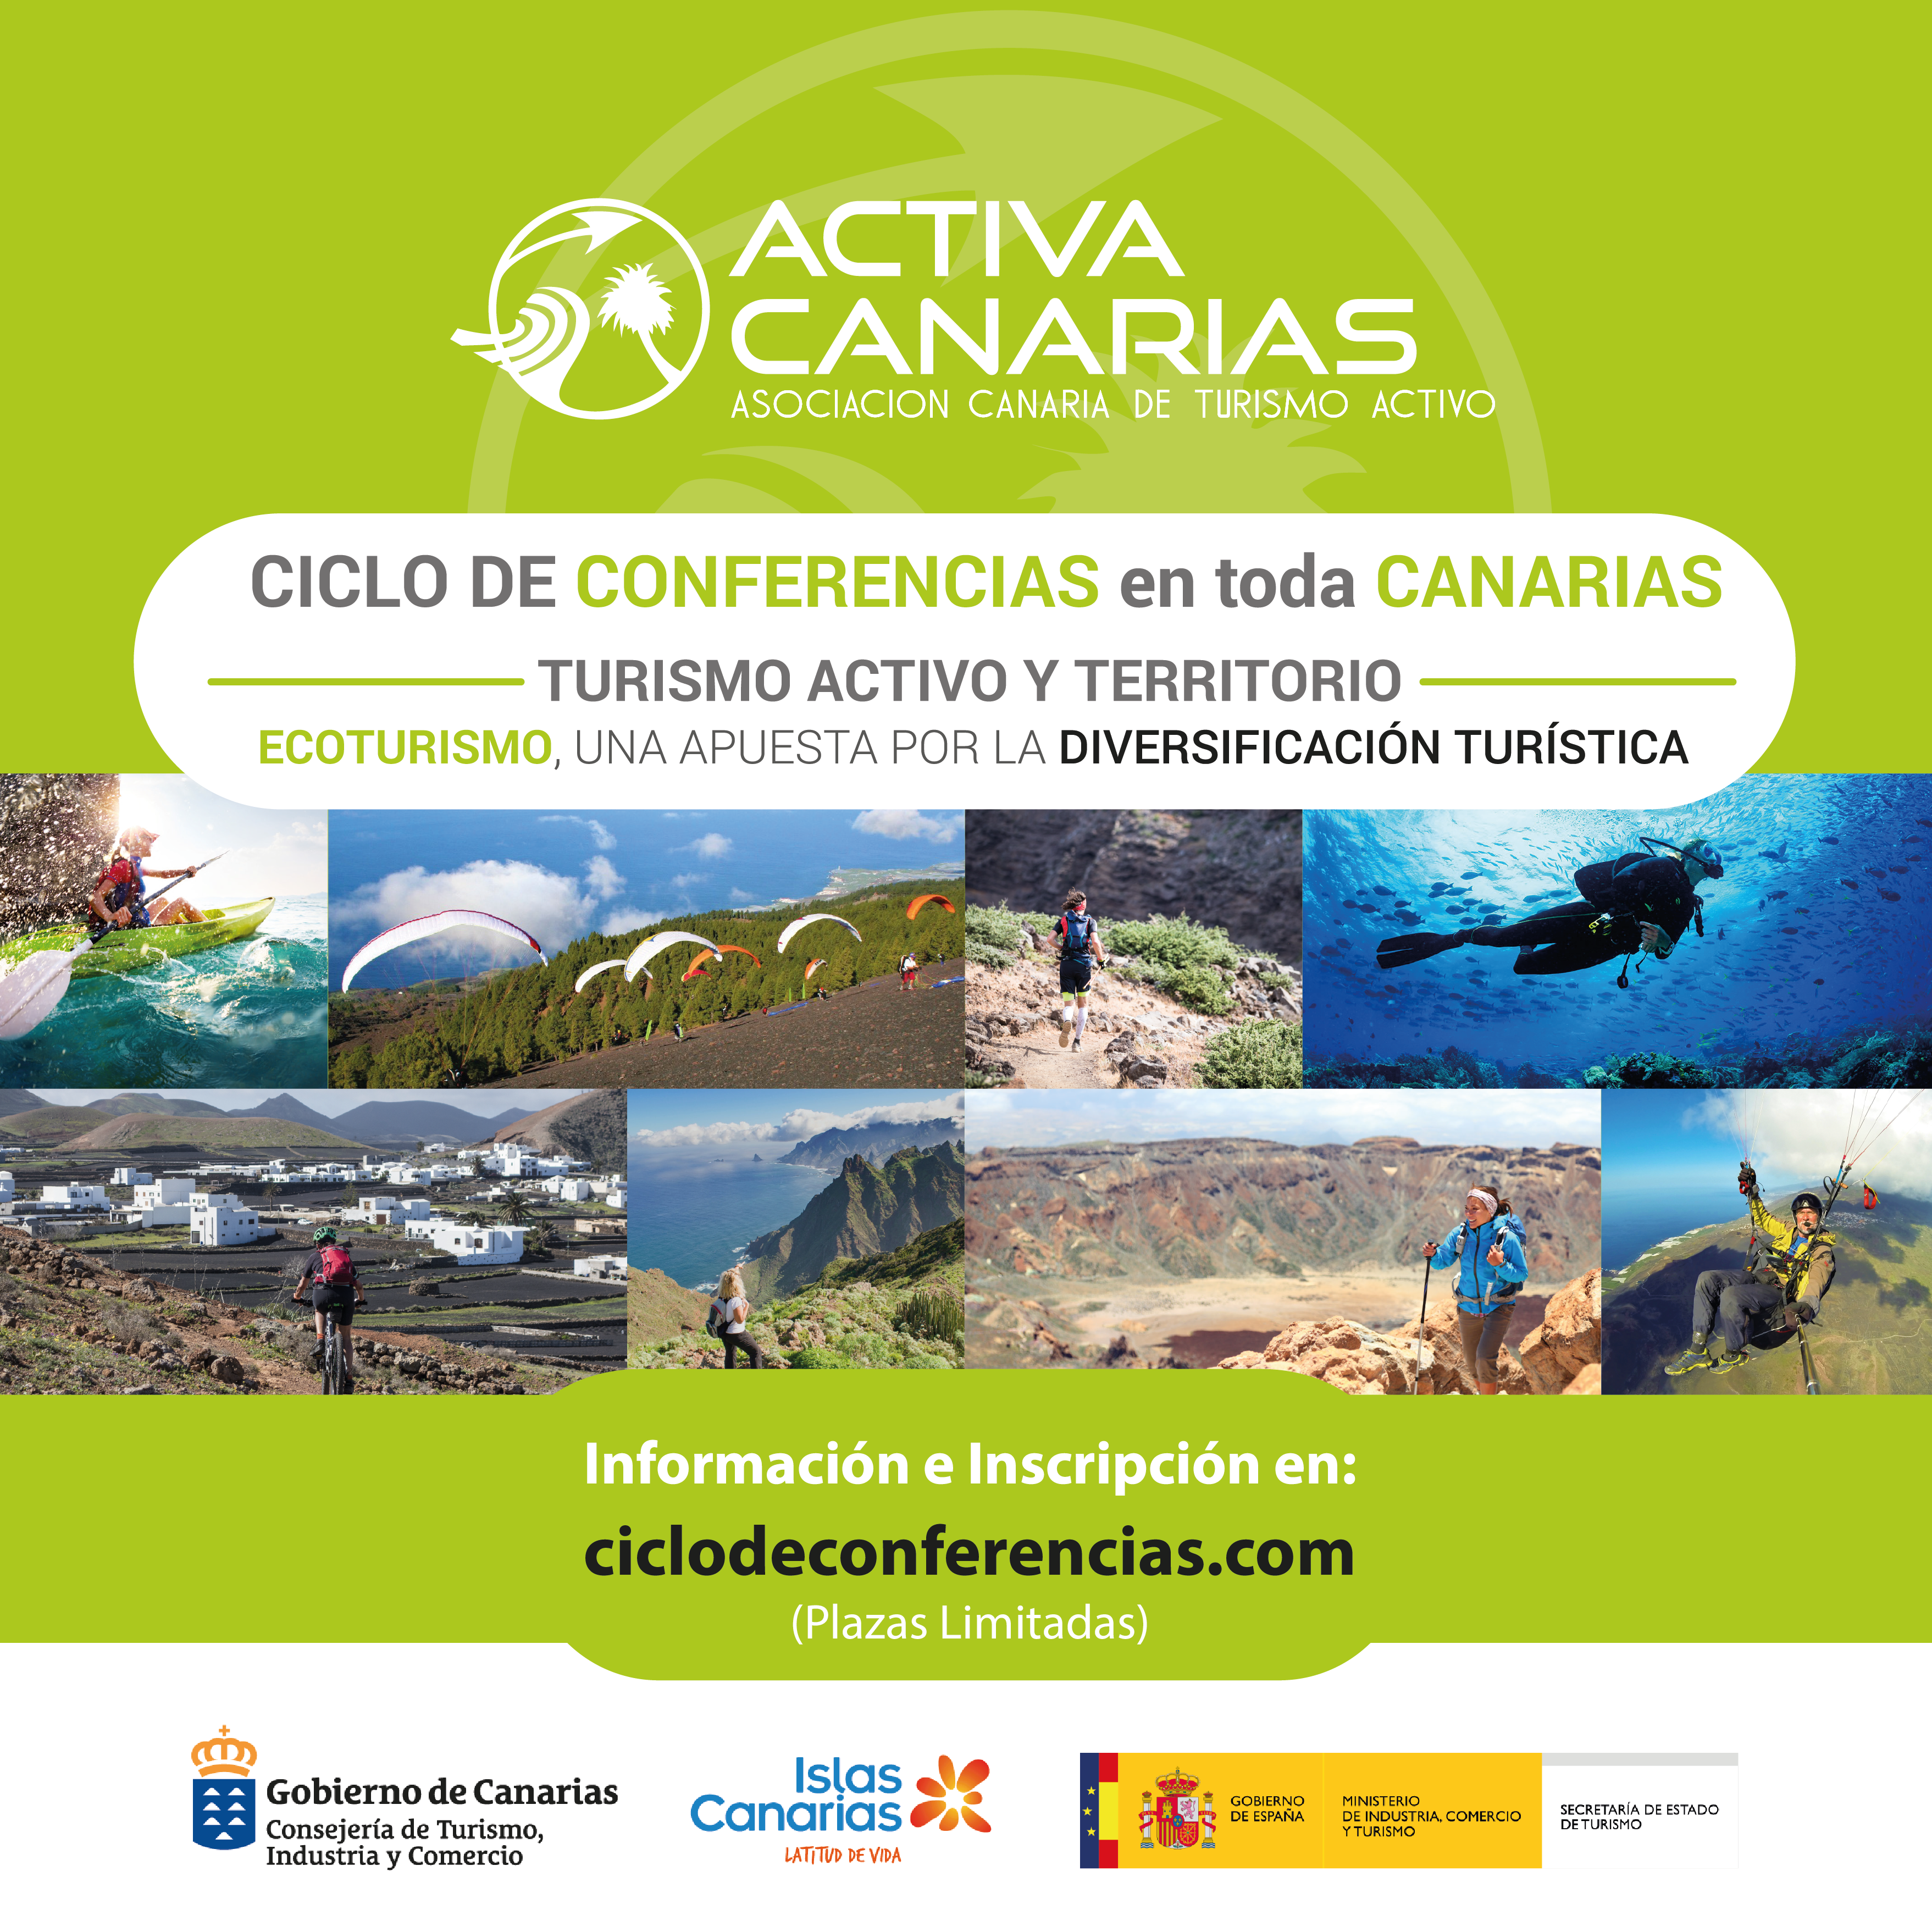 Custodia del Territorio en Gran Canaria participa en una jornada sobre Turismo Activo y territorio